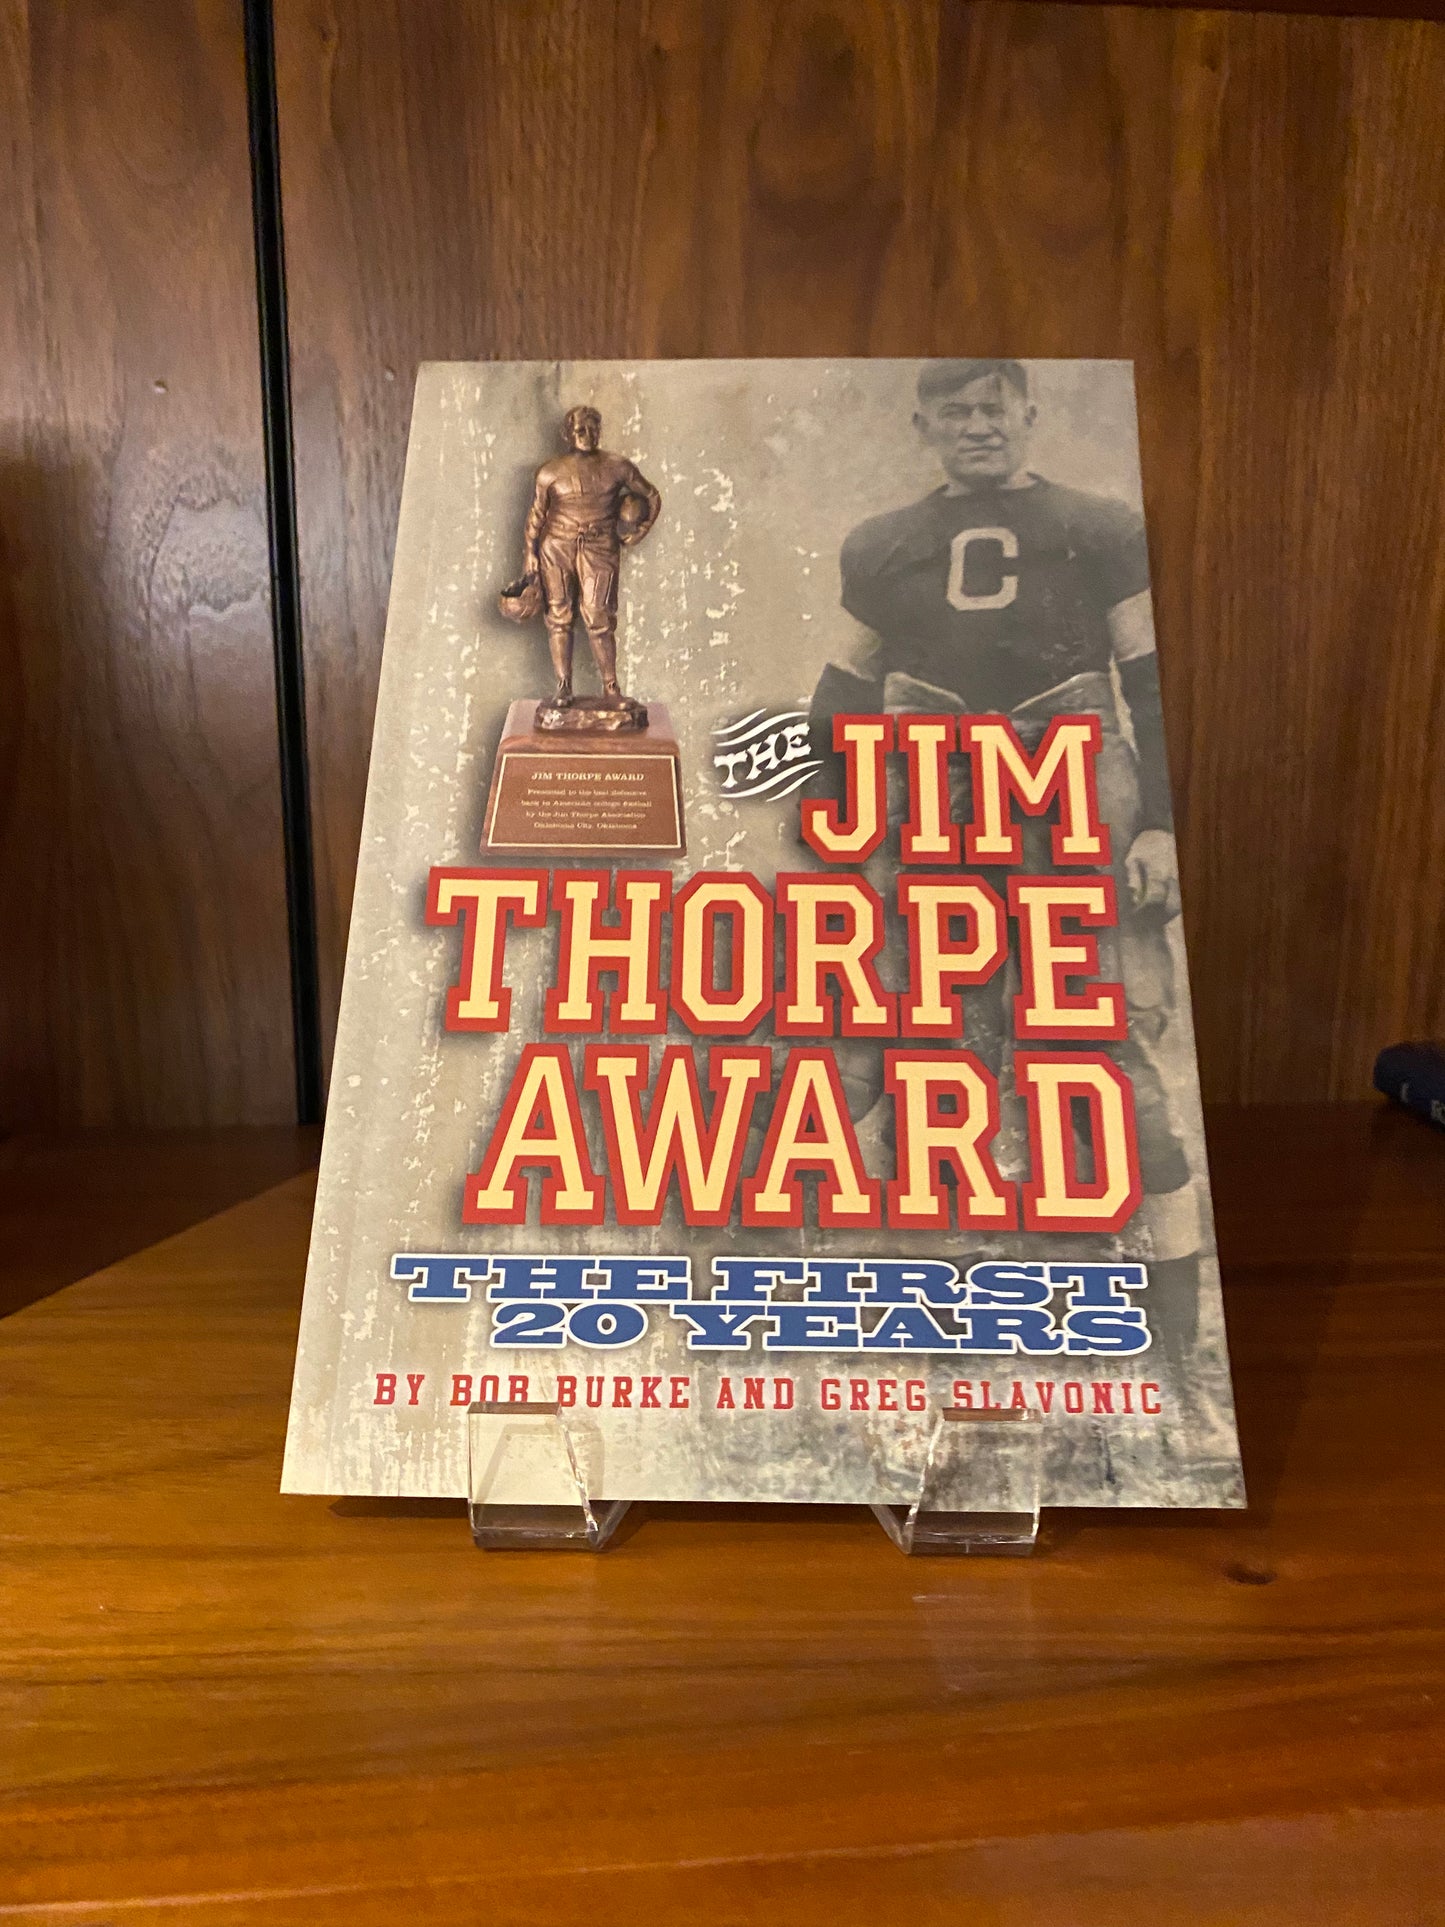 The Jim Thorpe Award